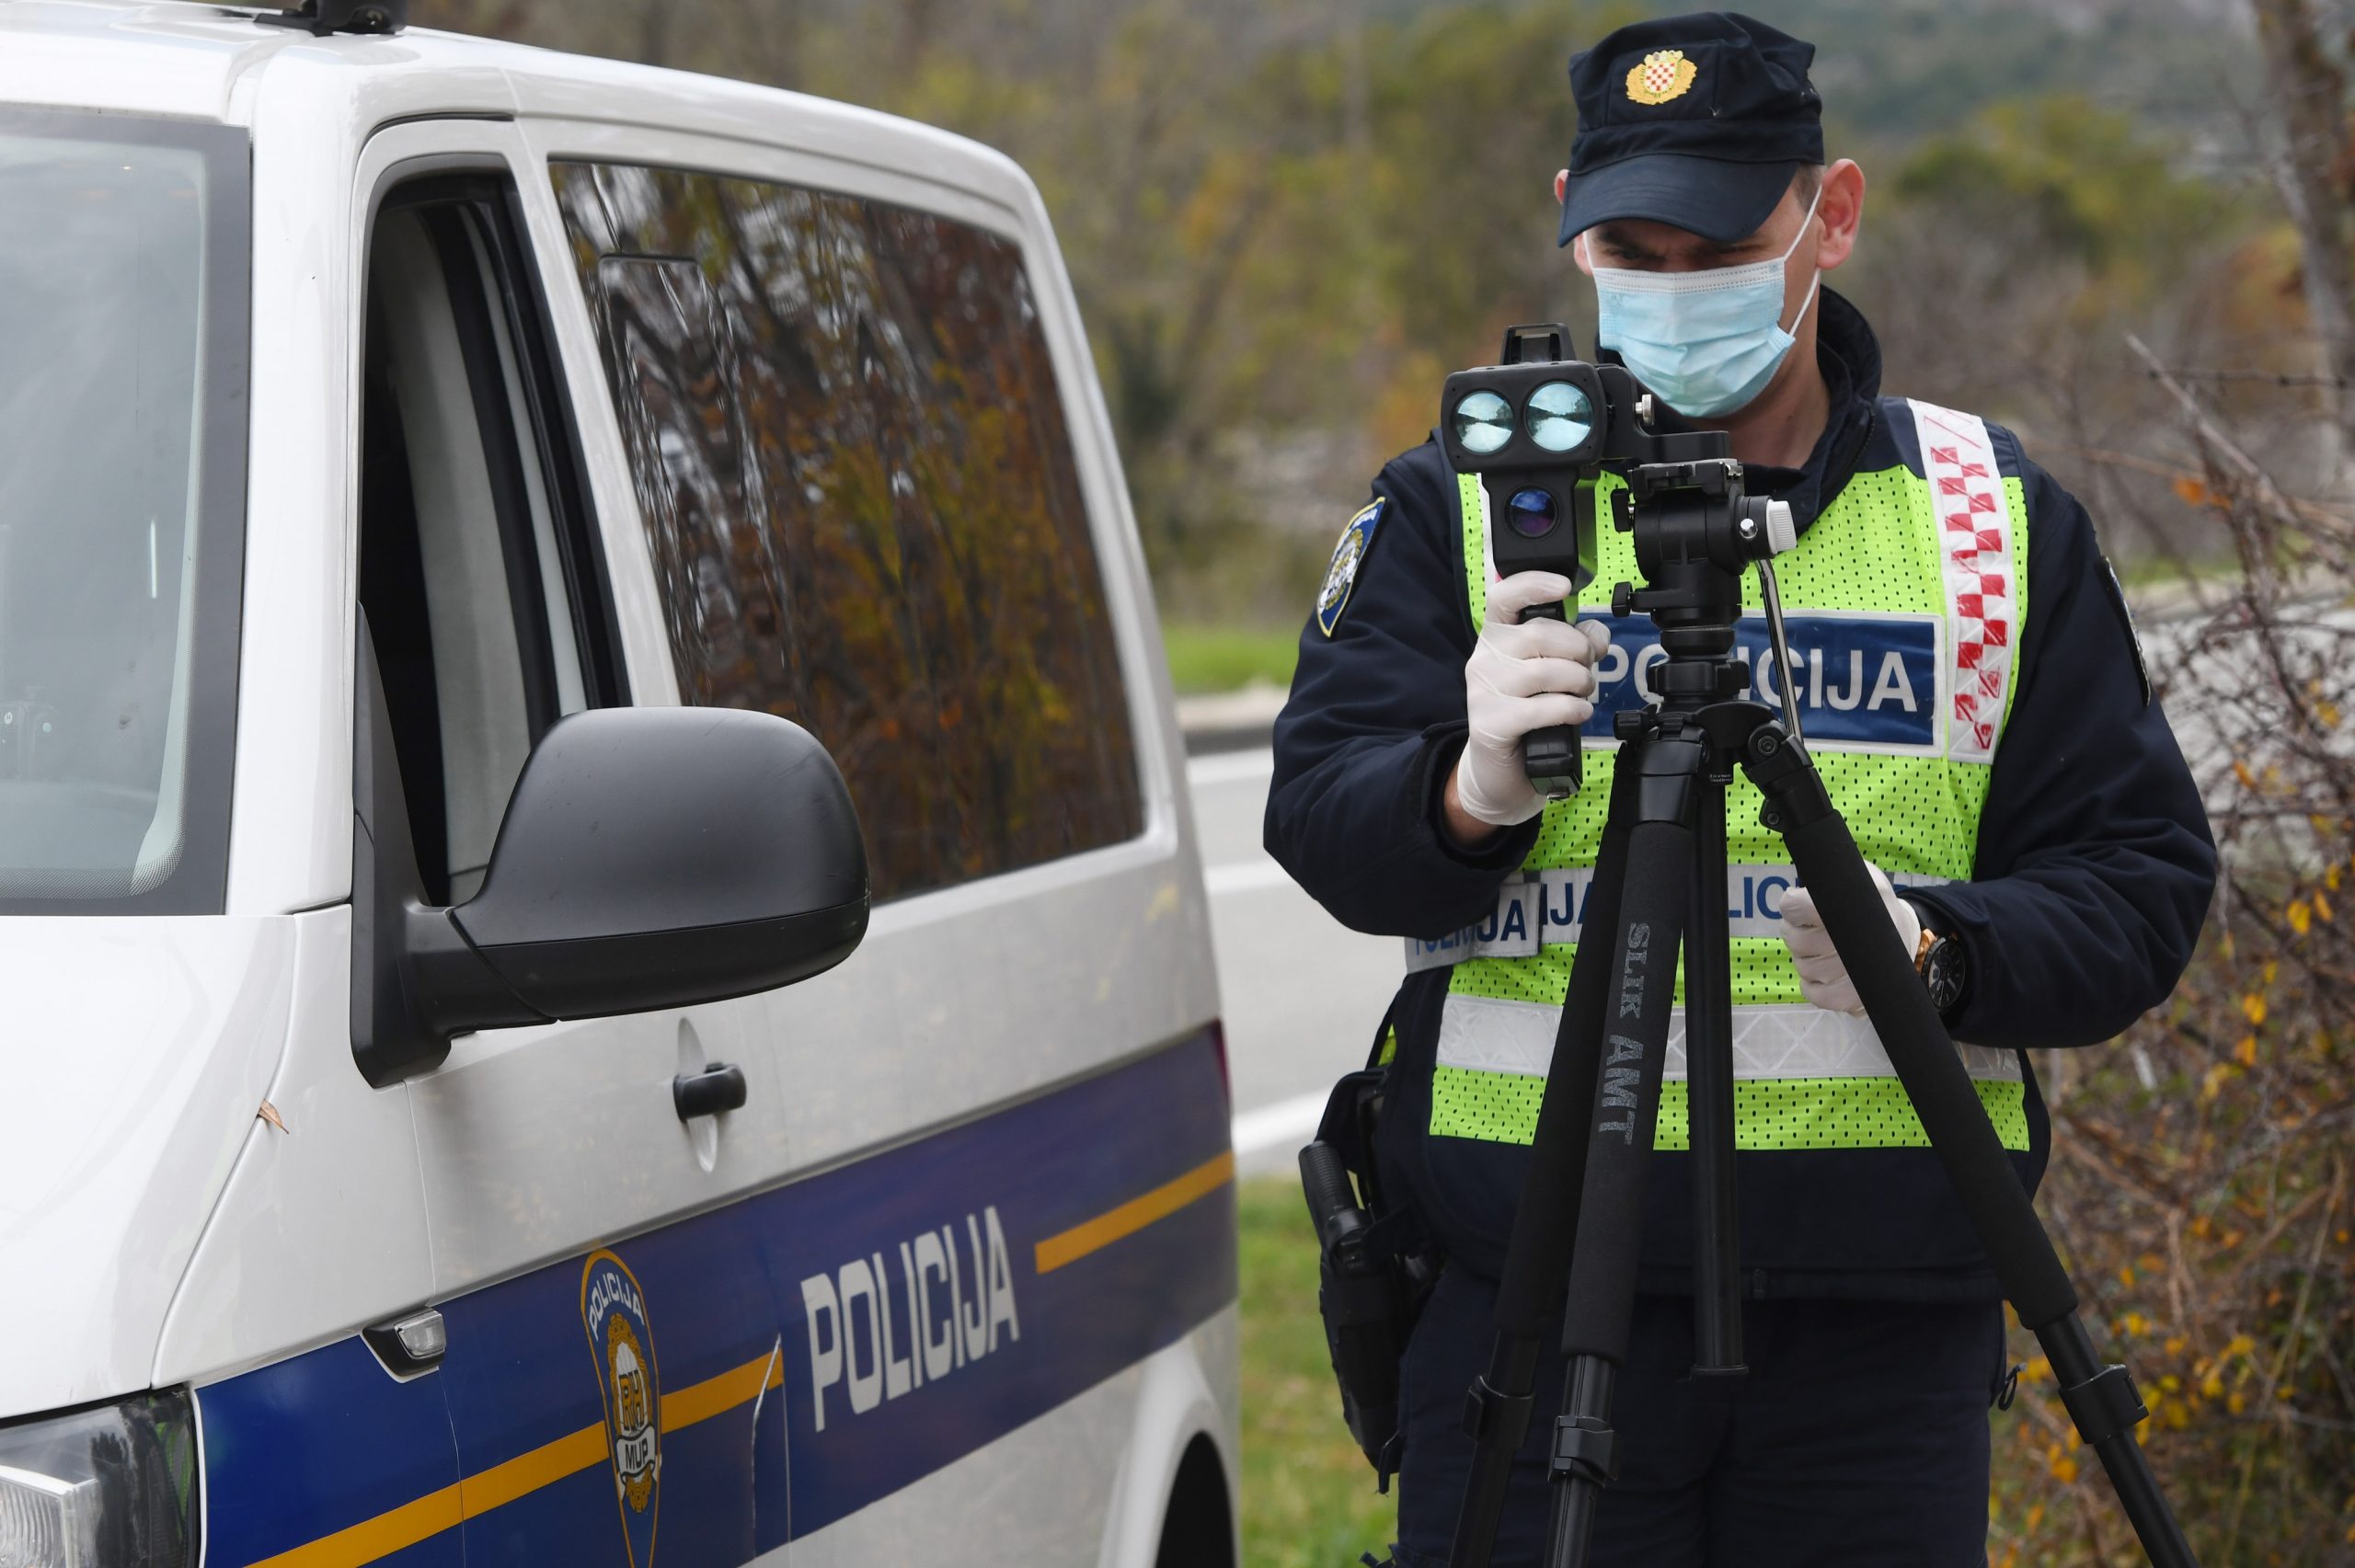 20.11.2020., Boraja - Policijska akcija nadzora brzine na podrucju cijele Sibensko-kninske zupanije.
Photo: Hrvoje Jelavic/PIXSELL